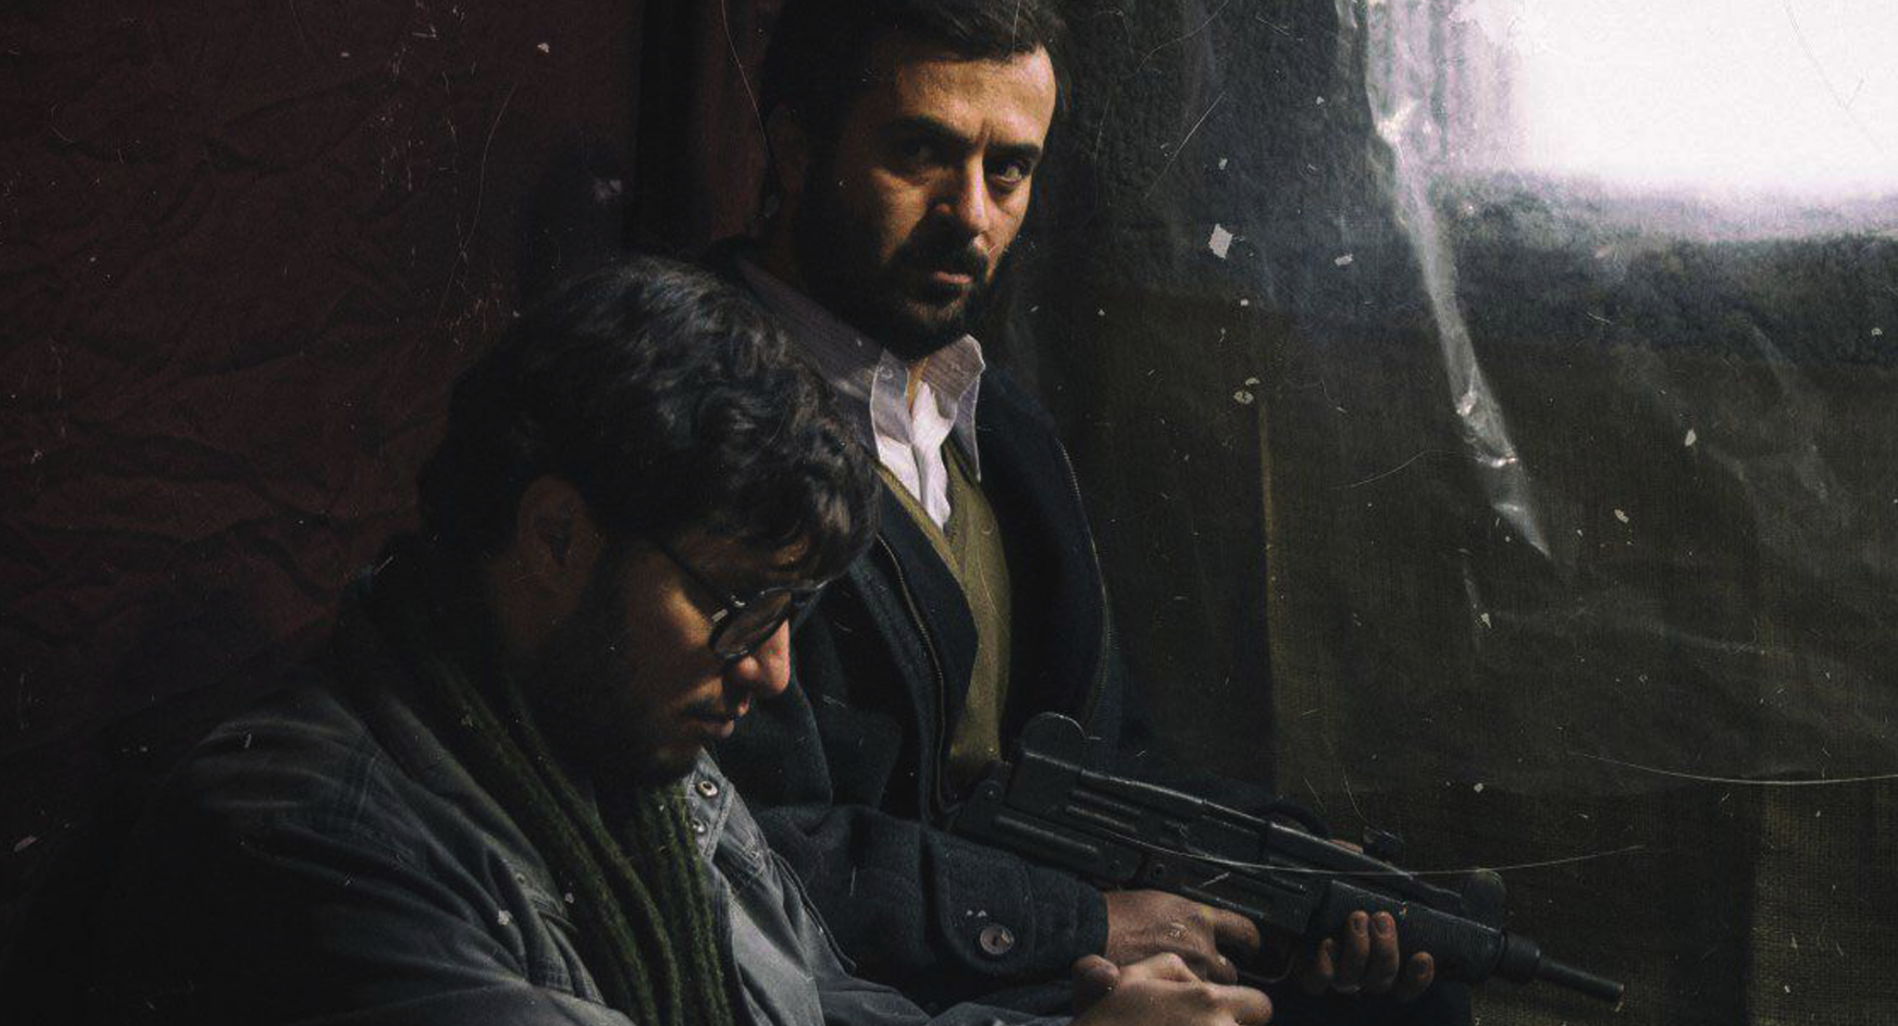  فیلم سینمایی ماجرای نیمروز با حضور احمد مهران‌فر و جواد عزتی